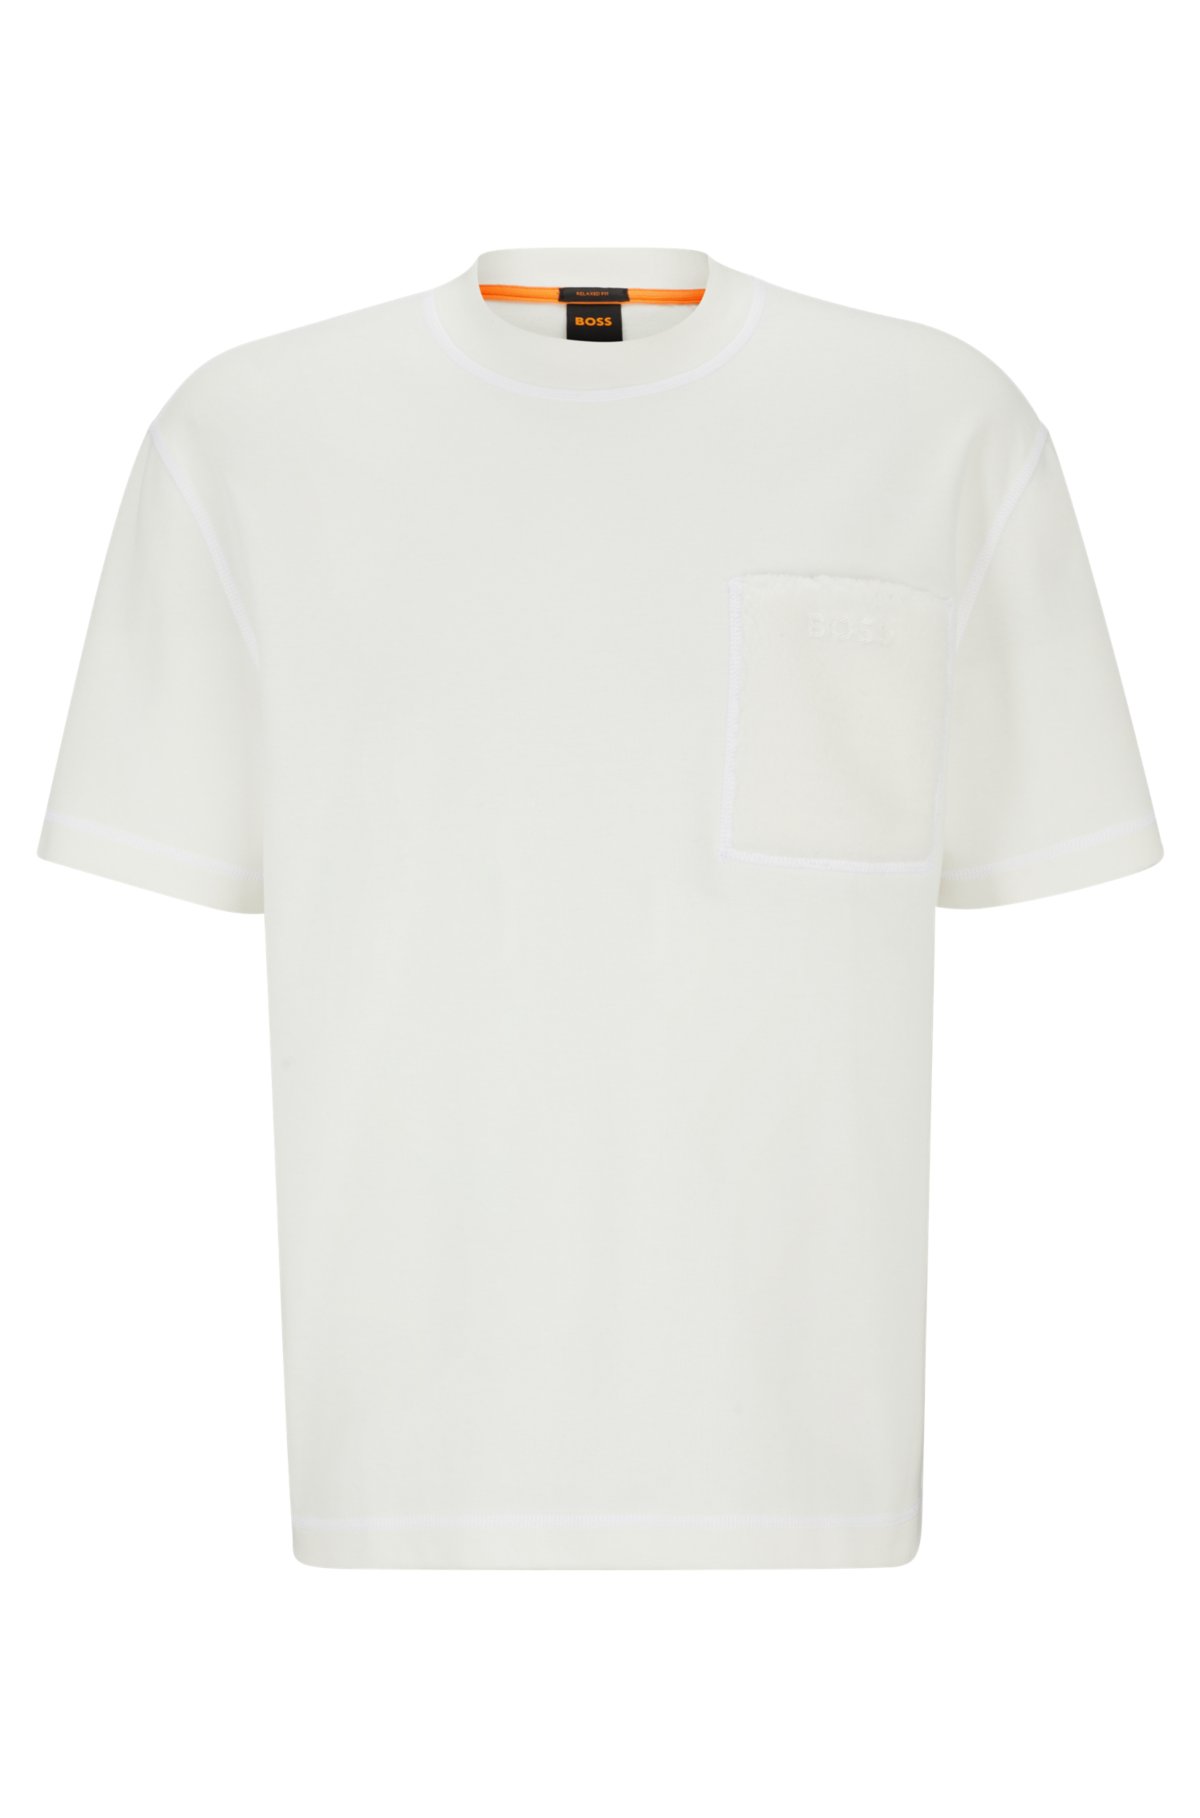 Louis Vuitton Pocket Tee  Lv shirt, Tshirt style, Bleach jeans diy